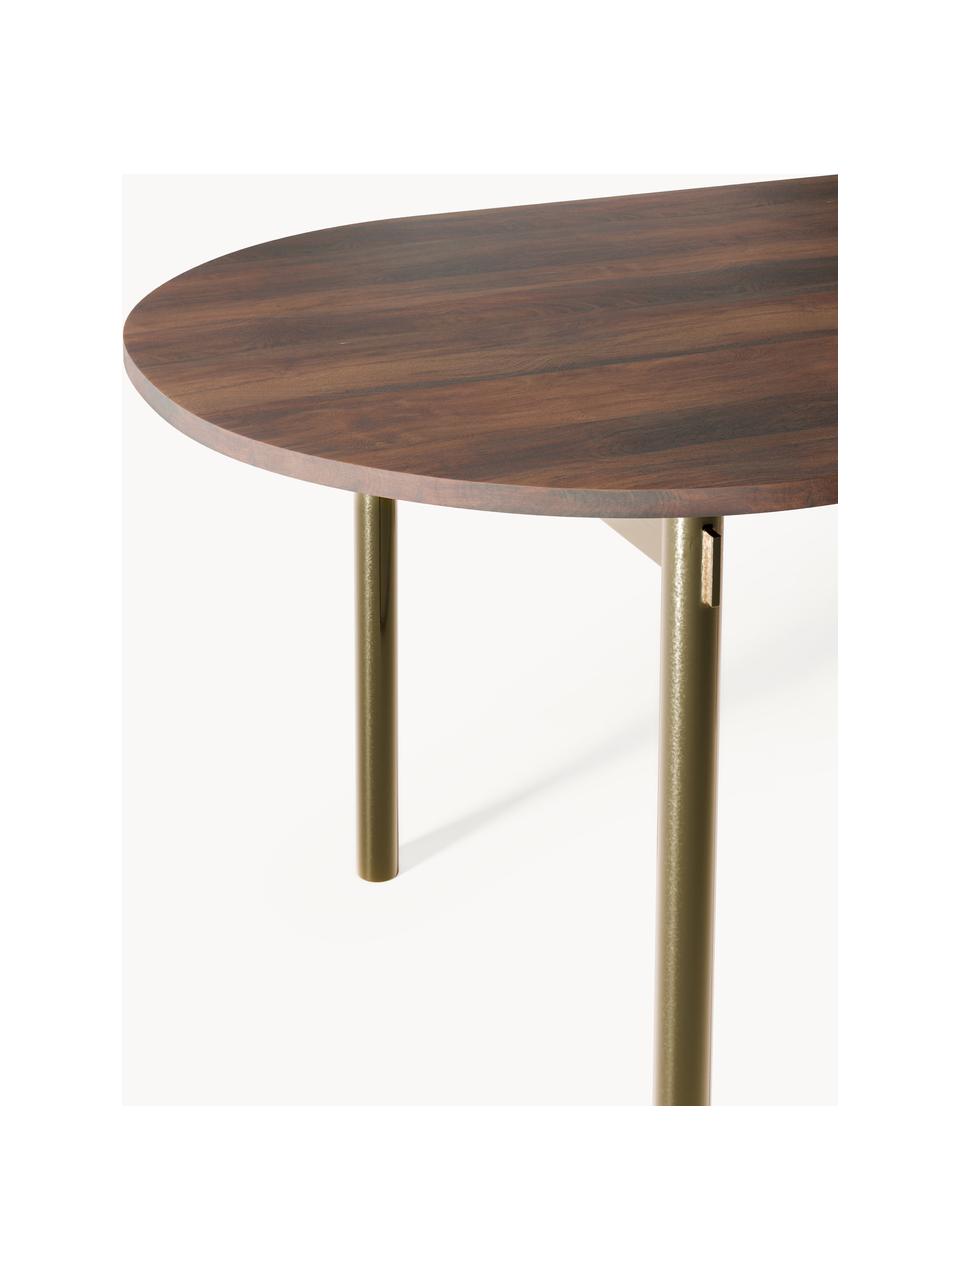 Owalny stół do jadalni Mavi, różne rozmiary, Blat: drewno akacjowe olejowane, Nogi: metal malowany proszkowo, Drewno akacjowe, S 180 x G 90 cm